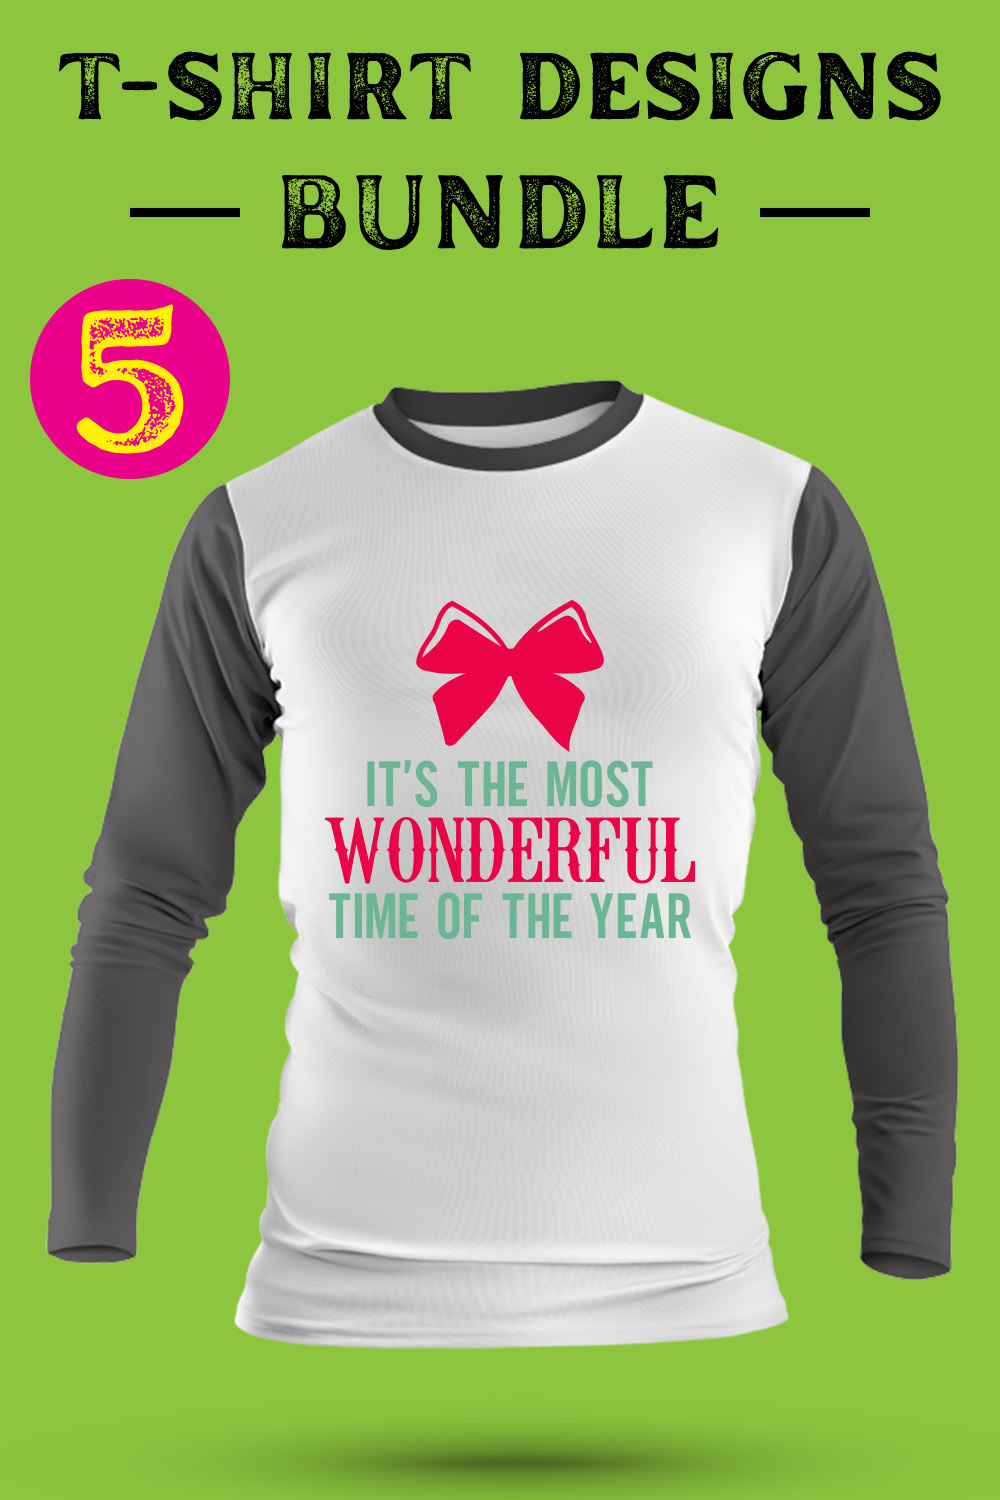 Christmas T Shirt Designs Bundle pinterest preview image.